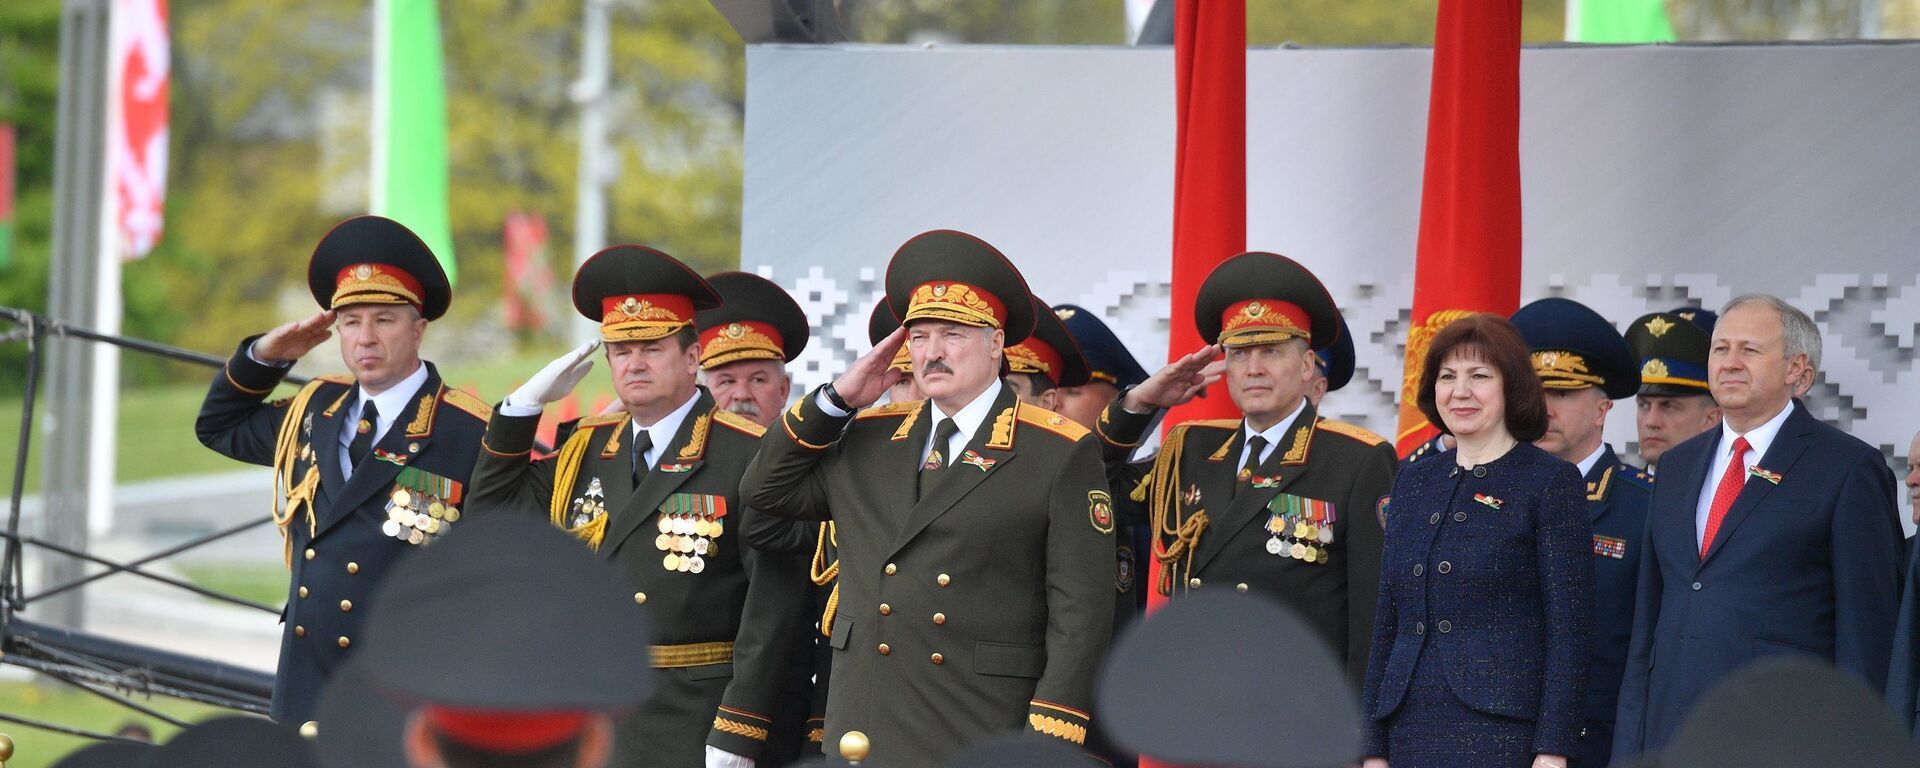 Александр Лукашенко на параде в честь 75-летия Победы - Sputnik Беларусь, 1920, 03.06.2021